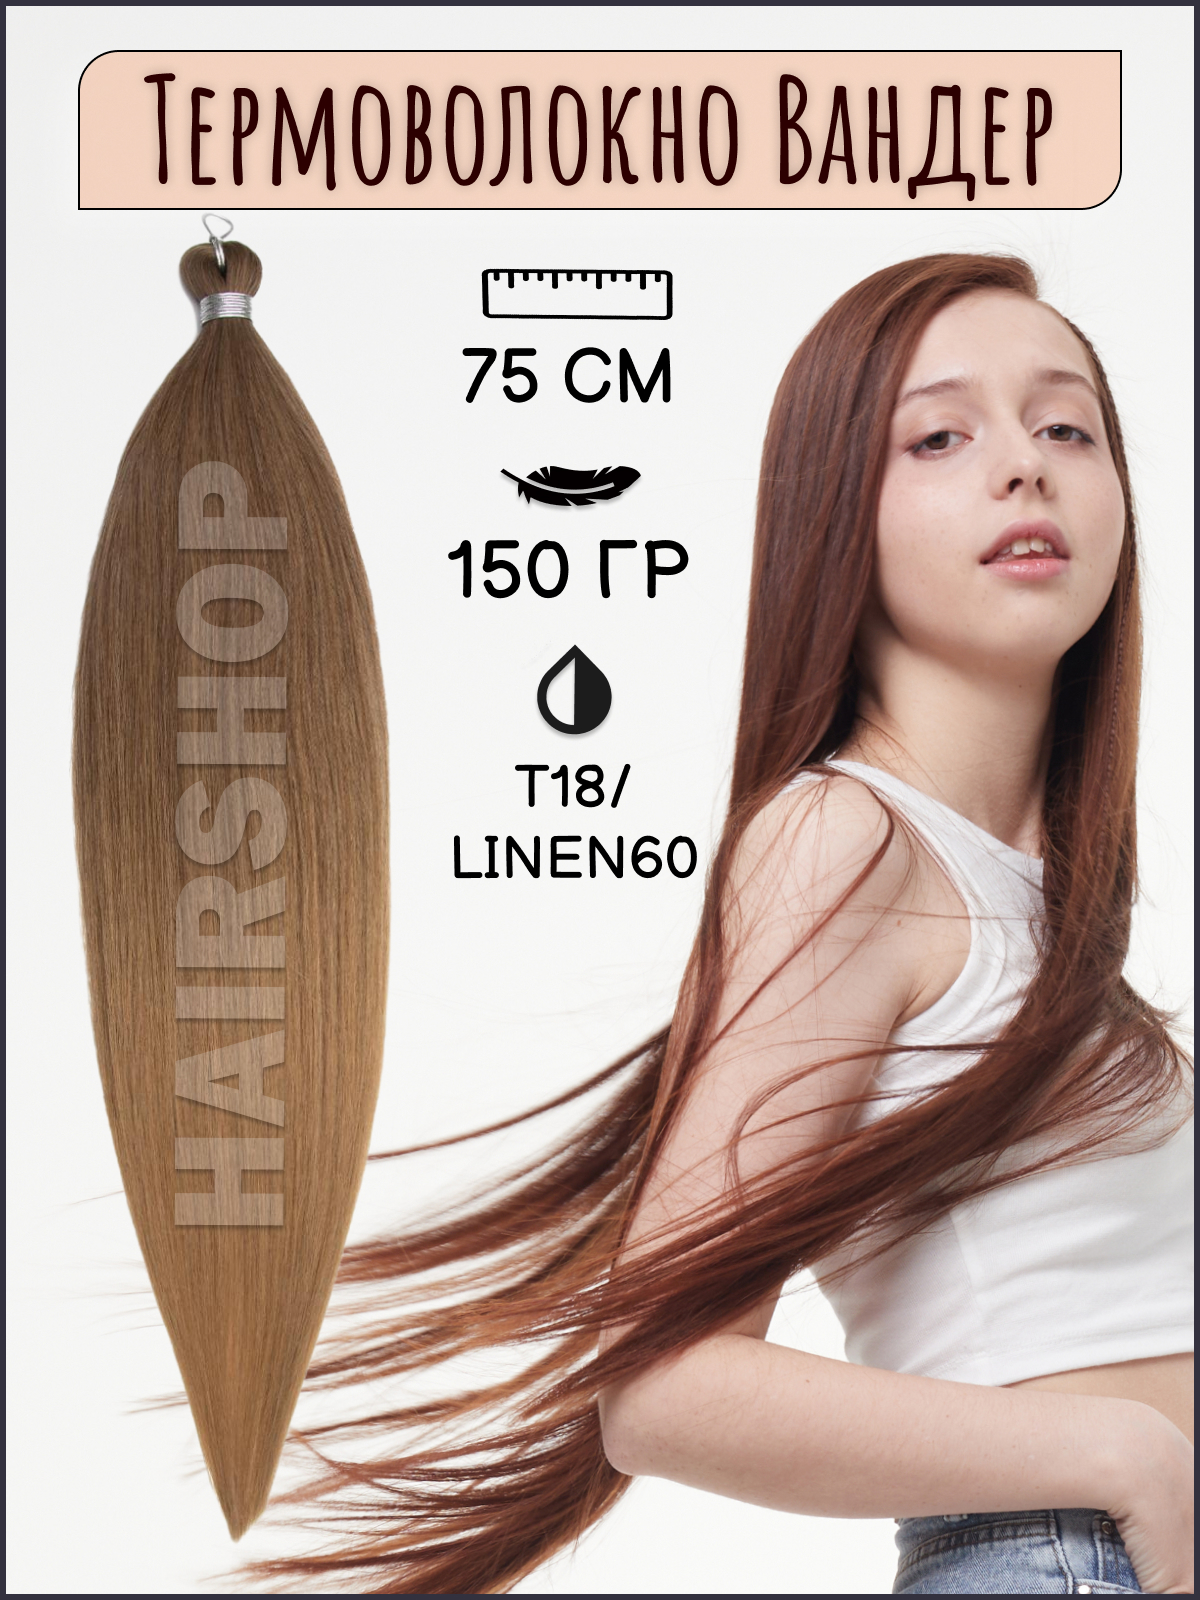 Термоволокно для наращивания Hairshop Вандер T18Linen60 150г 150см китай полная история страны